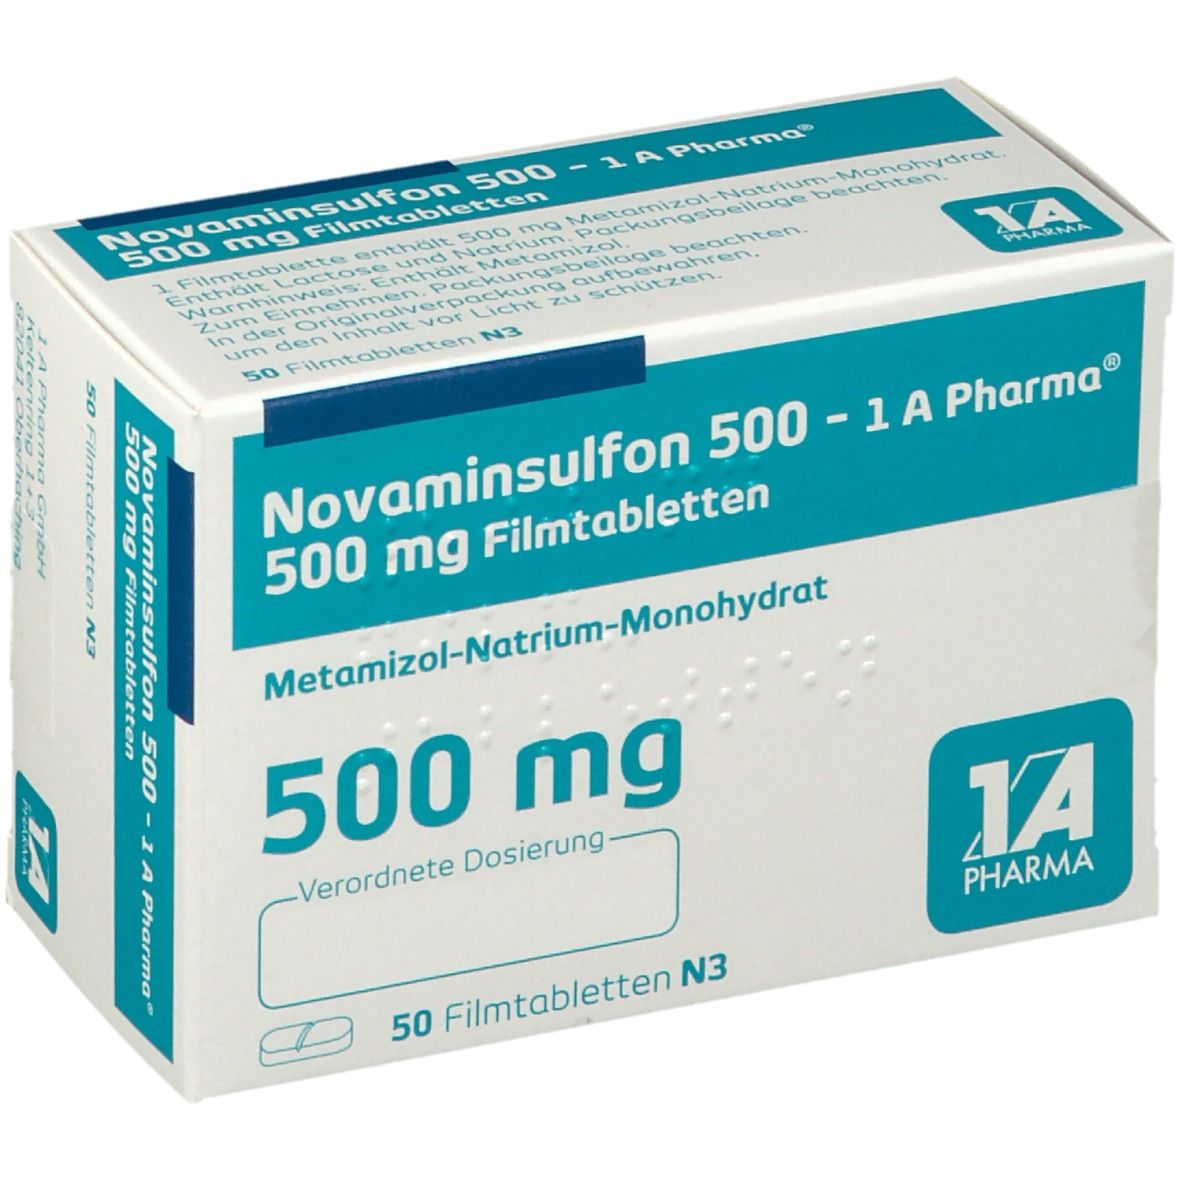 Novaminsulfon 500 mg stärker als ibuprofen 600